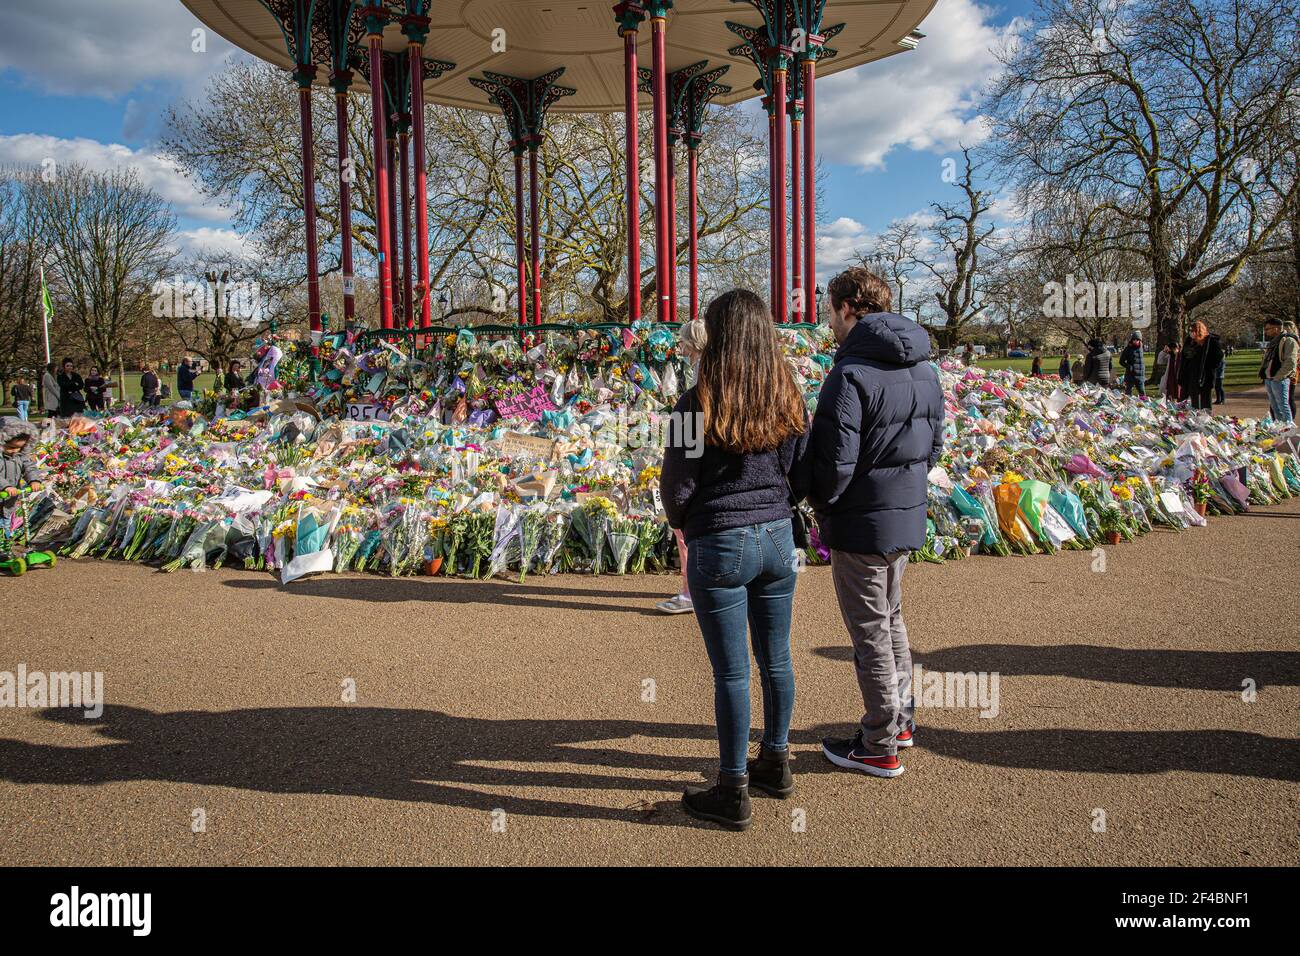 LONDON, ENGLAND - MÄRZ 19: Ein Paar schaut sich die floralen Tribute an, die am 19 2021. März in London, Großbritannien, am Bandstand auf Clapham Common hinterlassen wurden. © Hor Stockfoto